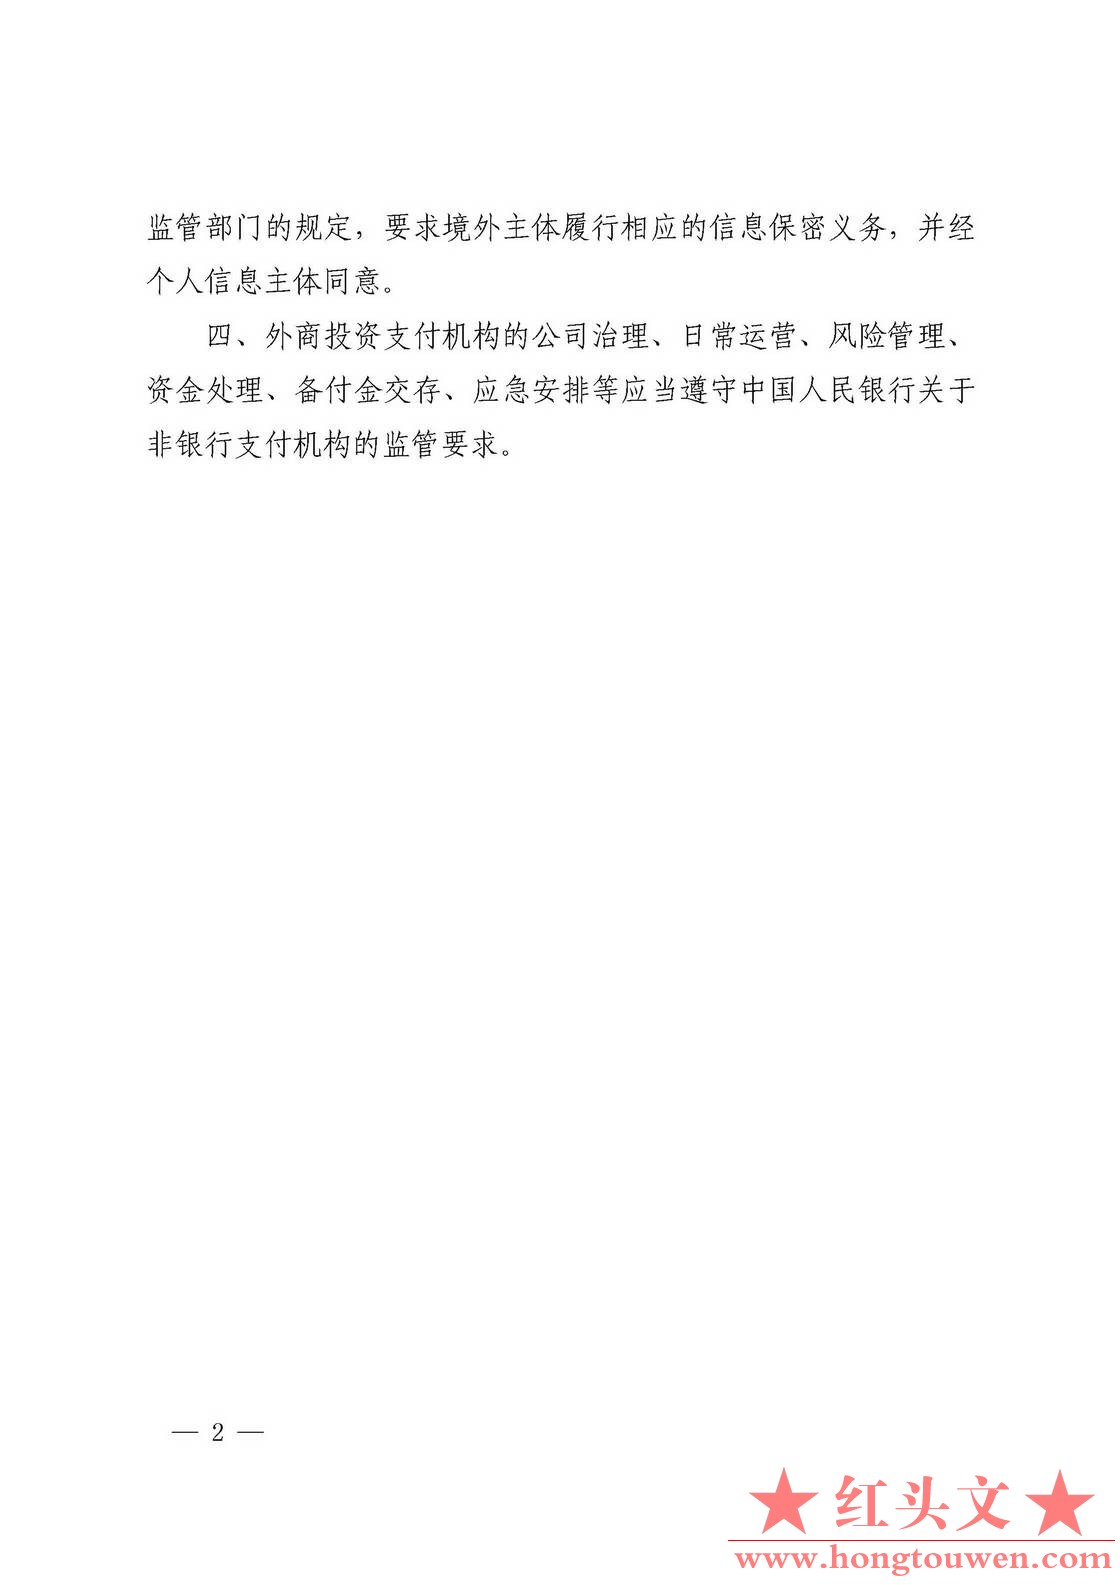 中国人民银行公告[2018]第7号-外商投资支付机构有关事宜_页面_2.jpg